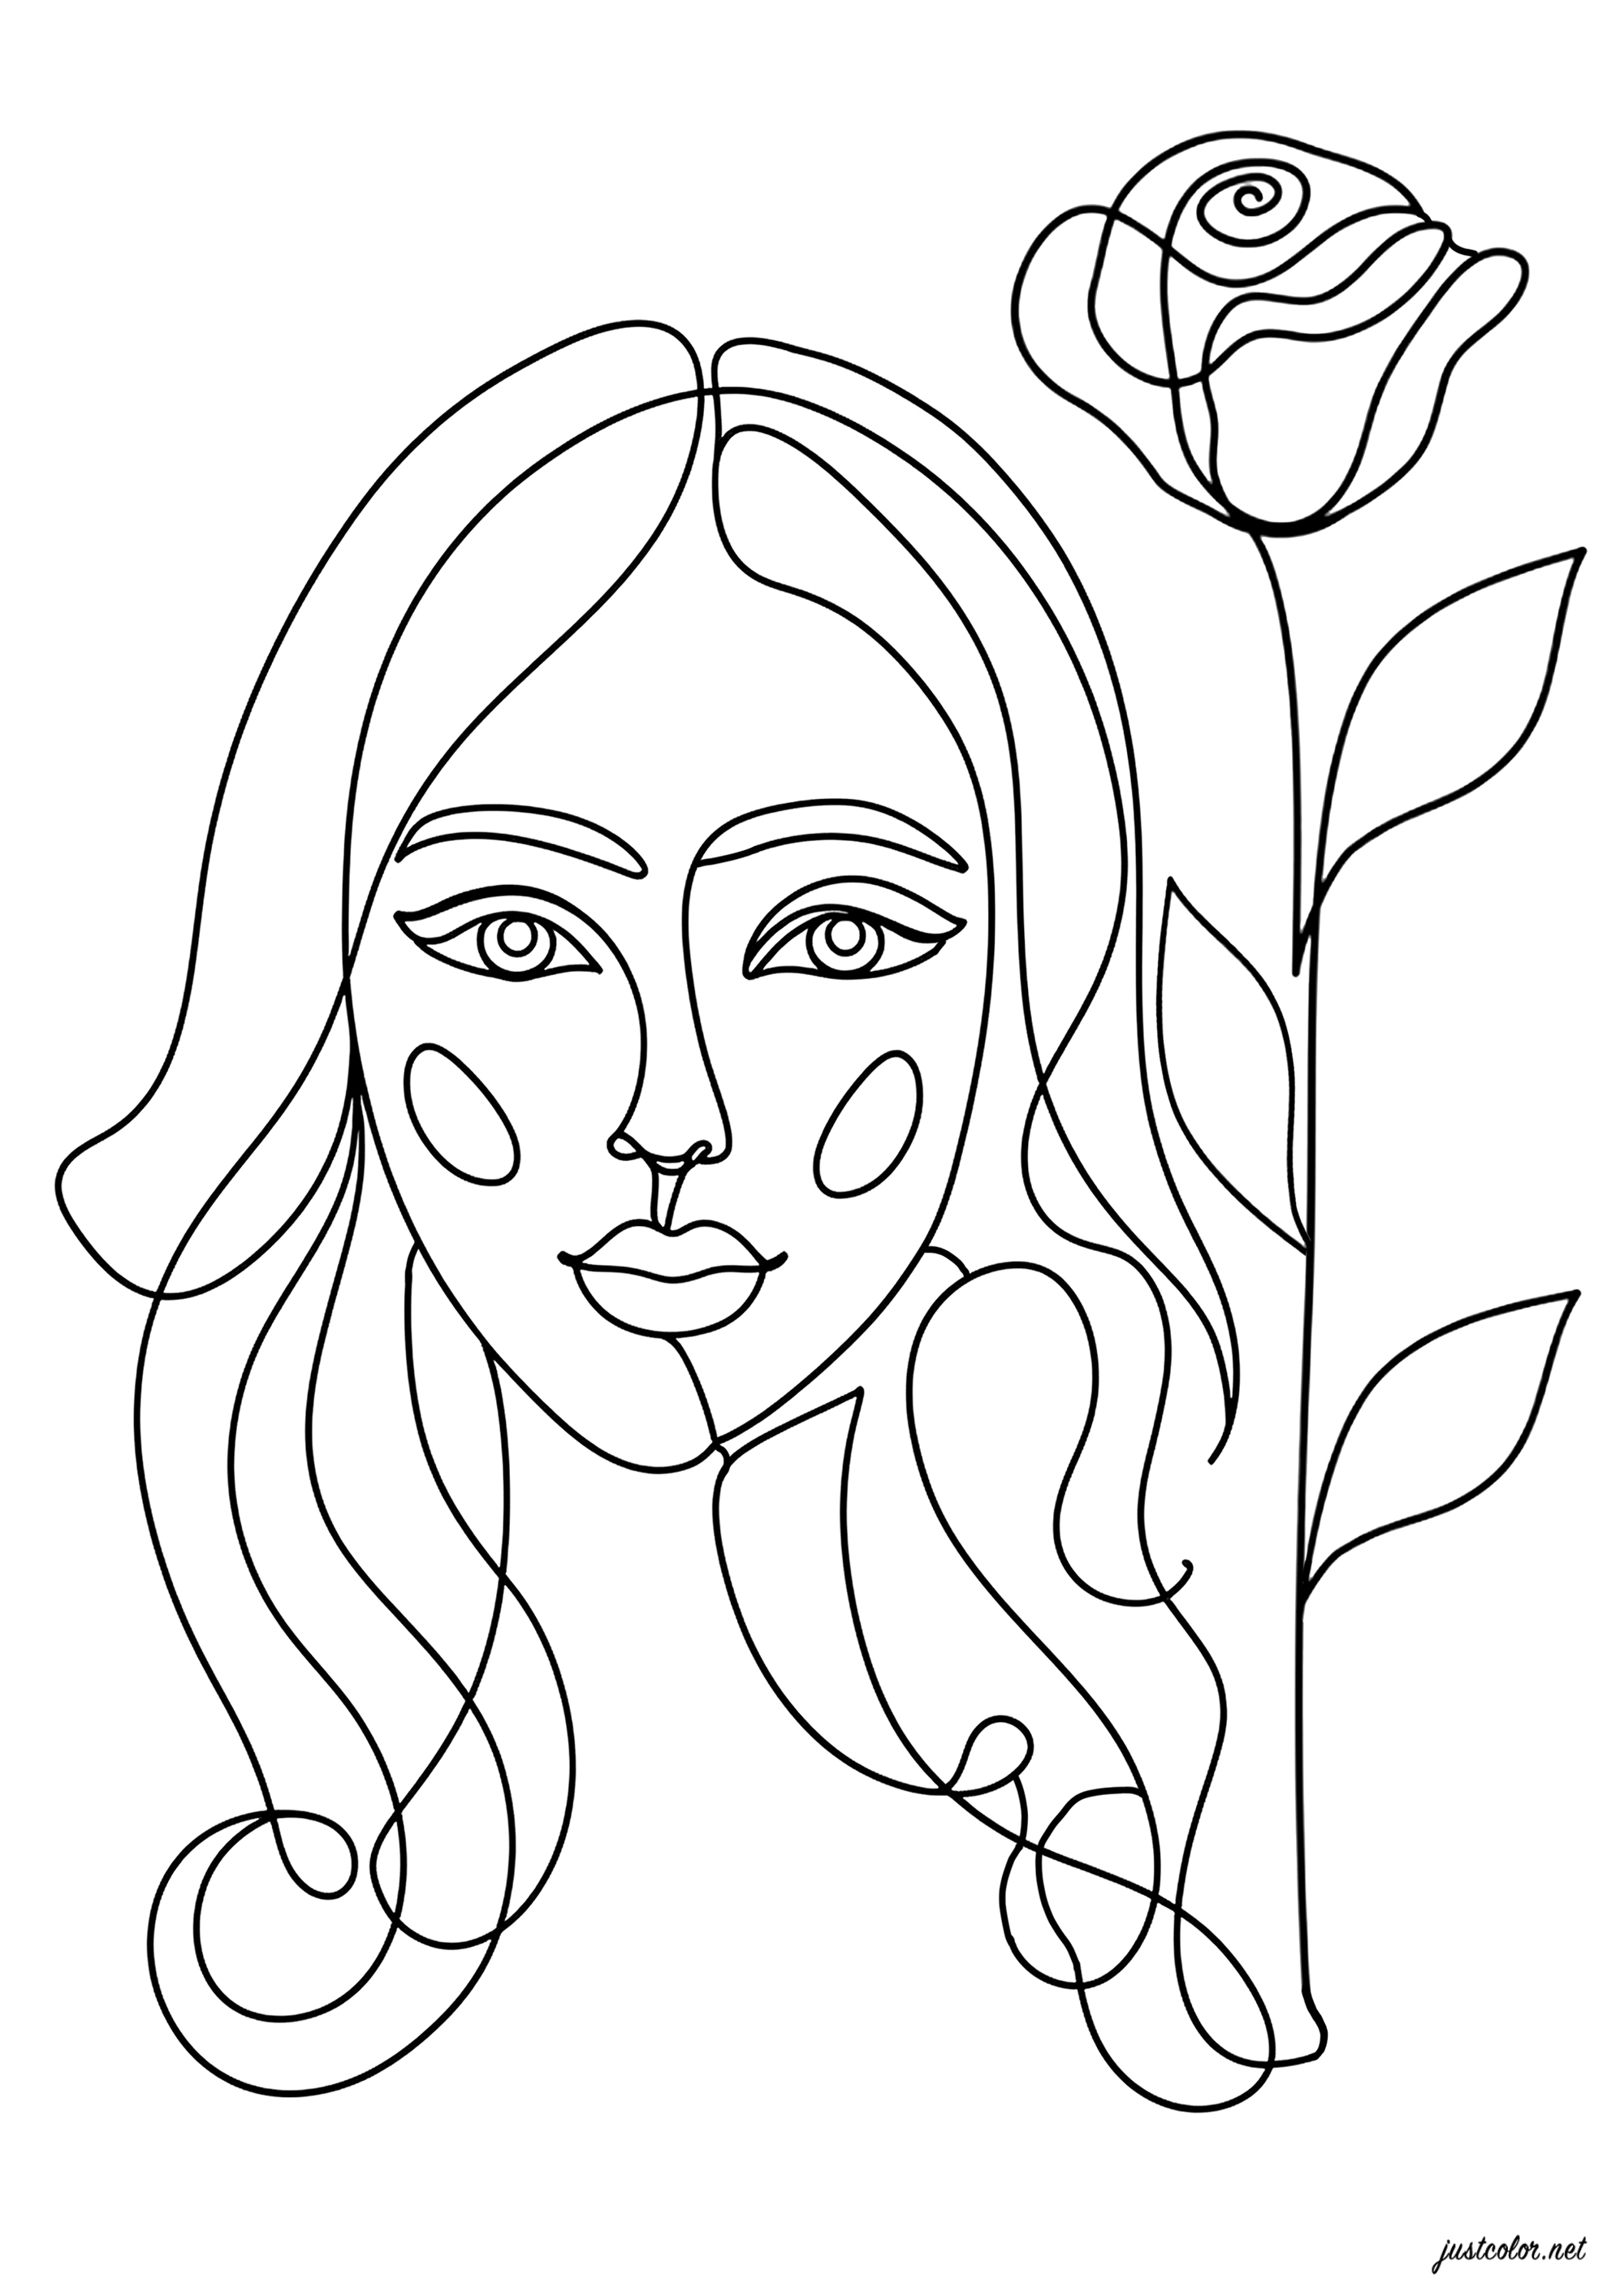 Frau und hübsche Rose (Strichzeichnung). Die Linienkunst zeichnet sich durch die ausschließliche Verwendung von kontinuierlichen Linien zur Gestaltung von Bildern aus, ohne Rückgriff auf Farbe oder Füllung.